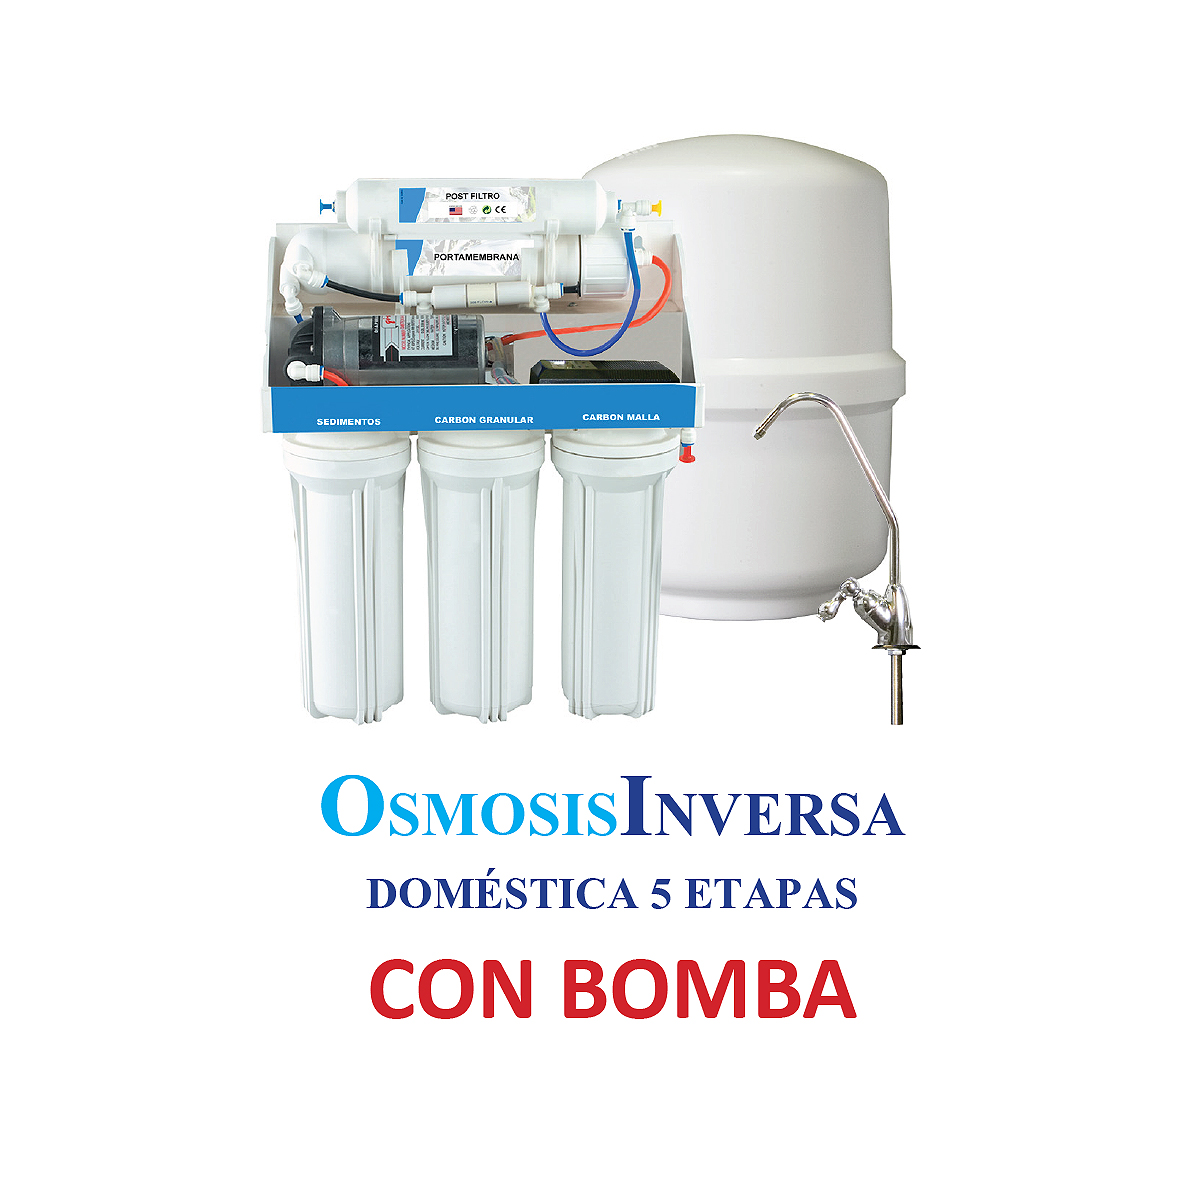 Osmosis Inversa R1, 5 etapas con bomba